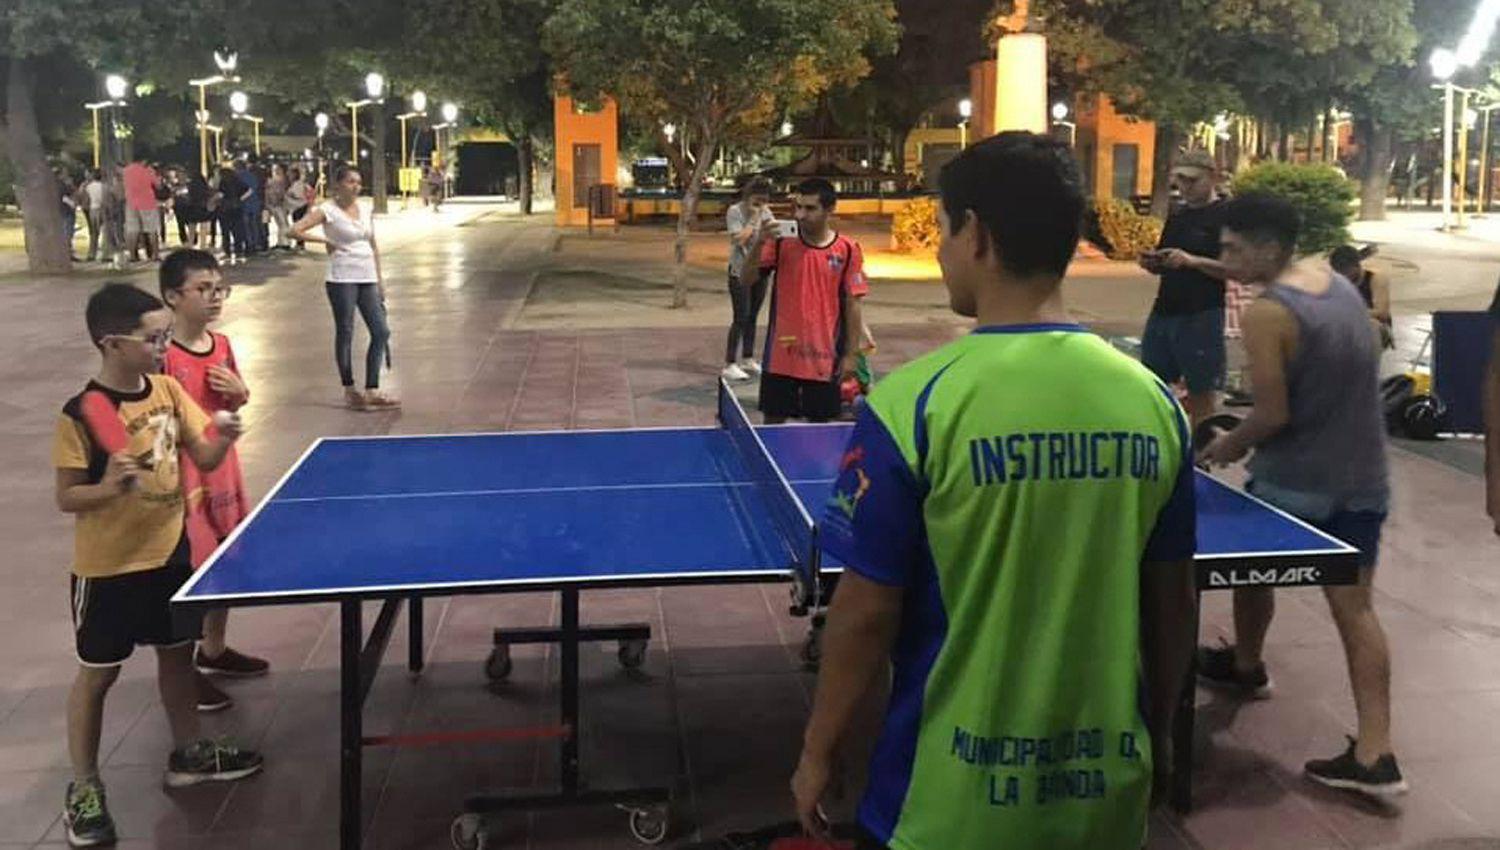 CRECIMIENTO El tenis de mesa gana cada vez m�s adeptos en La Banda Se puede practicar en el Gimnasio Municipal
